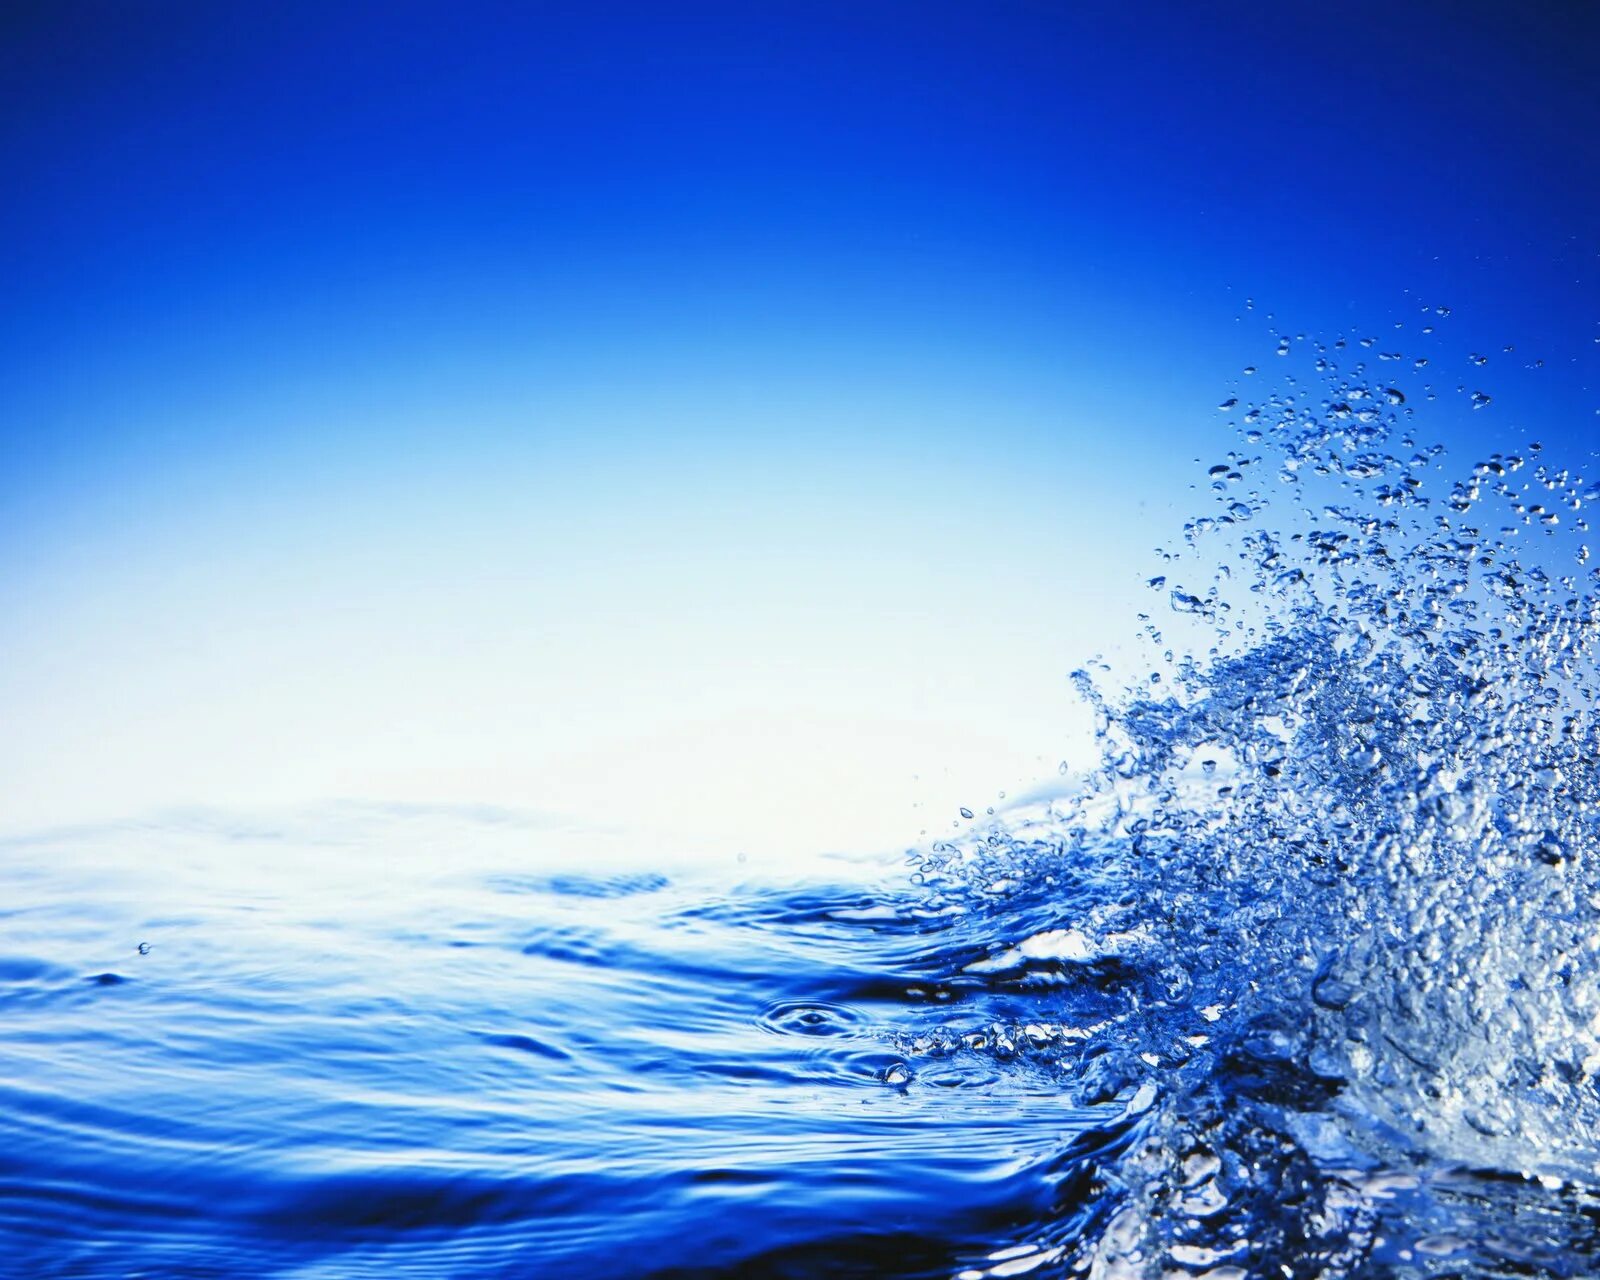 Вода картинки. Изображение 800 на 600 пикселей. Обои на айфон вода. Вода 800. 600 300 воды